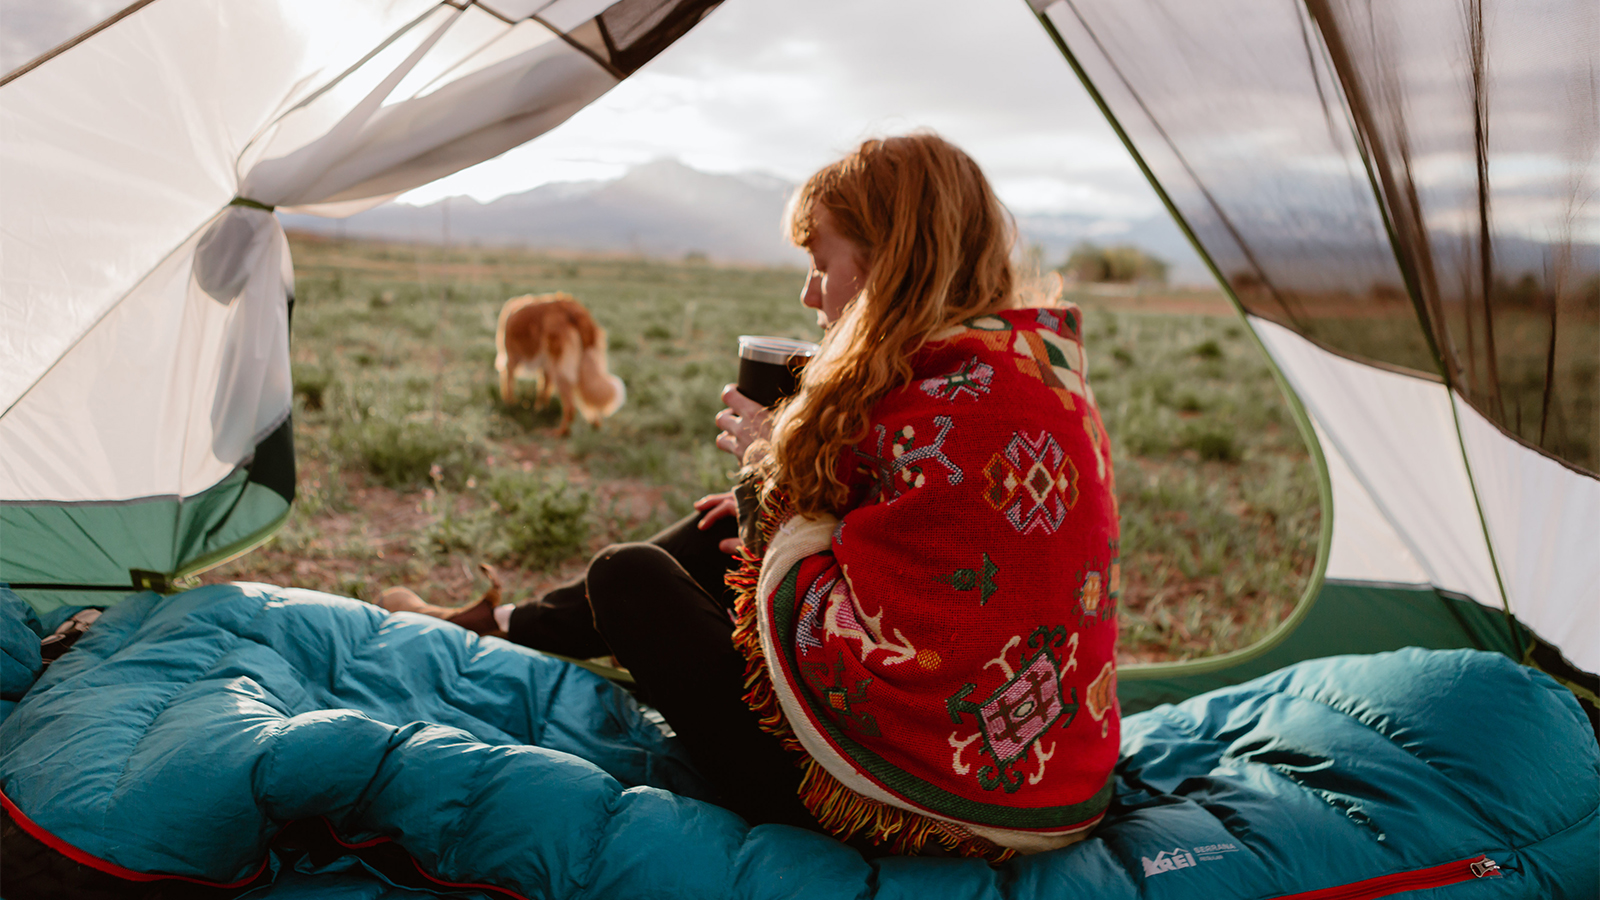 Colorado Camping